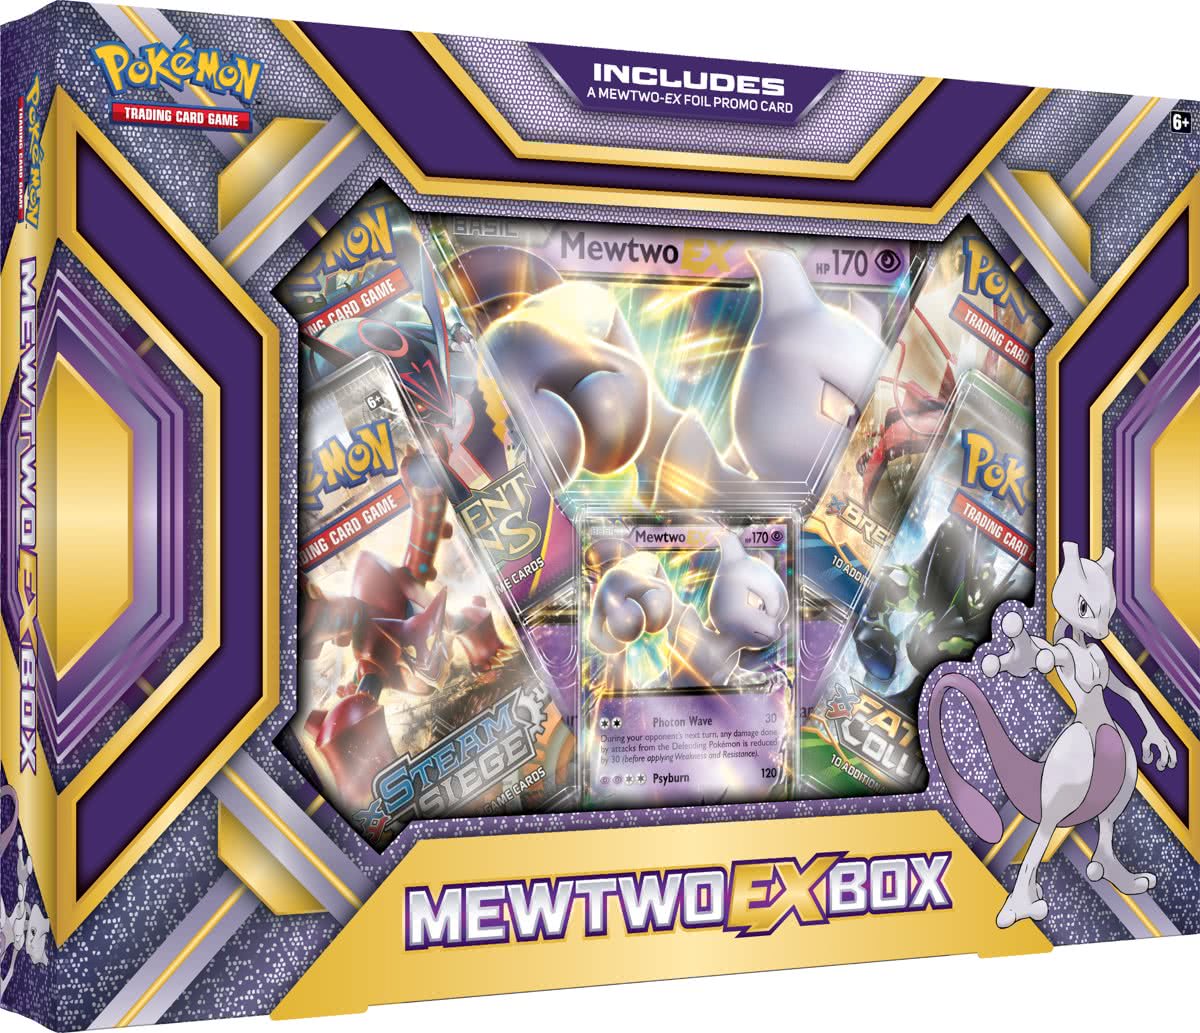 Pokemon Collection Box: Mewtwo-EX (Pokemon), The Pokemon Company